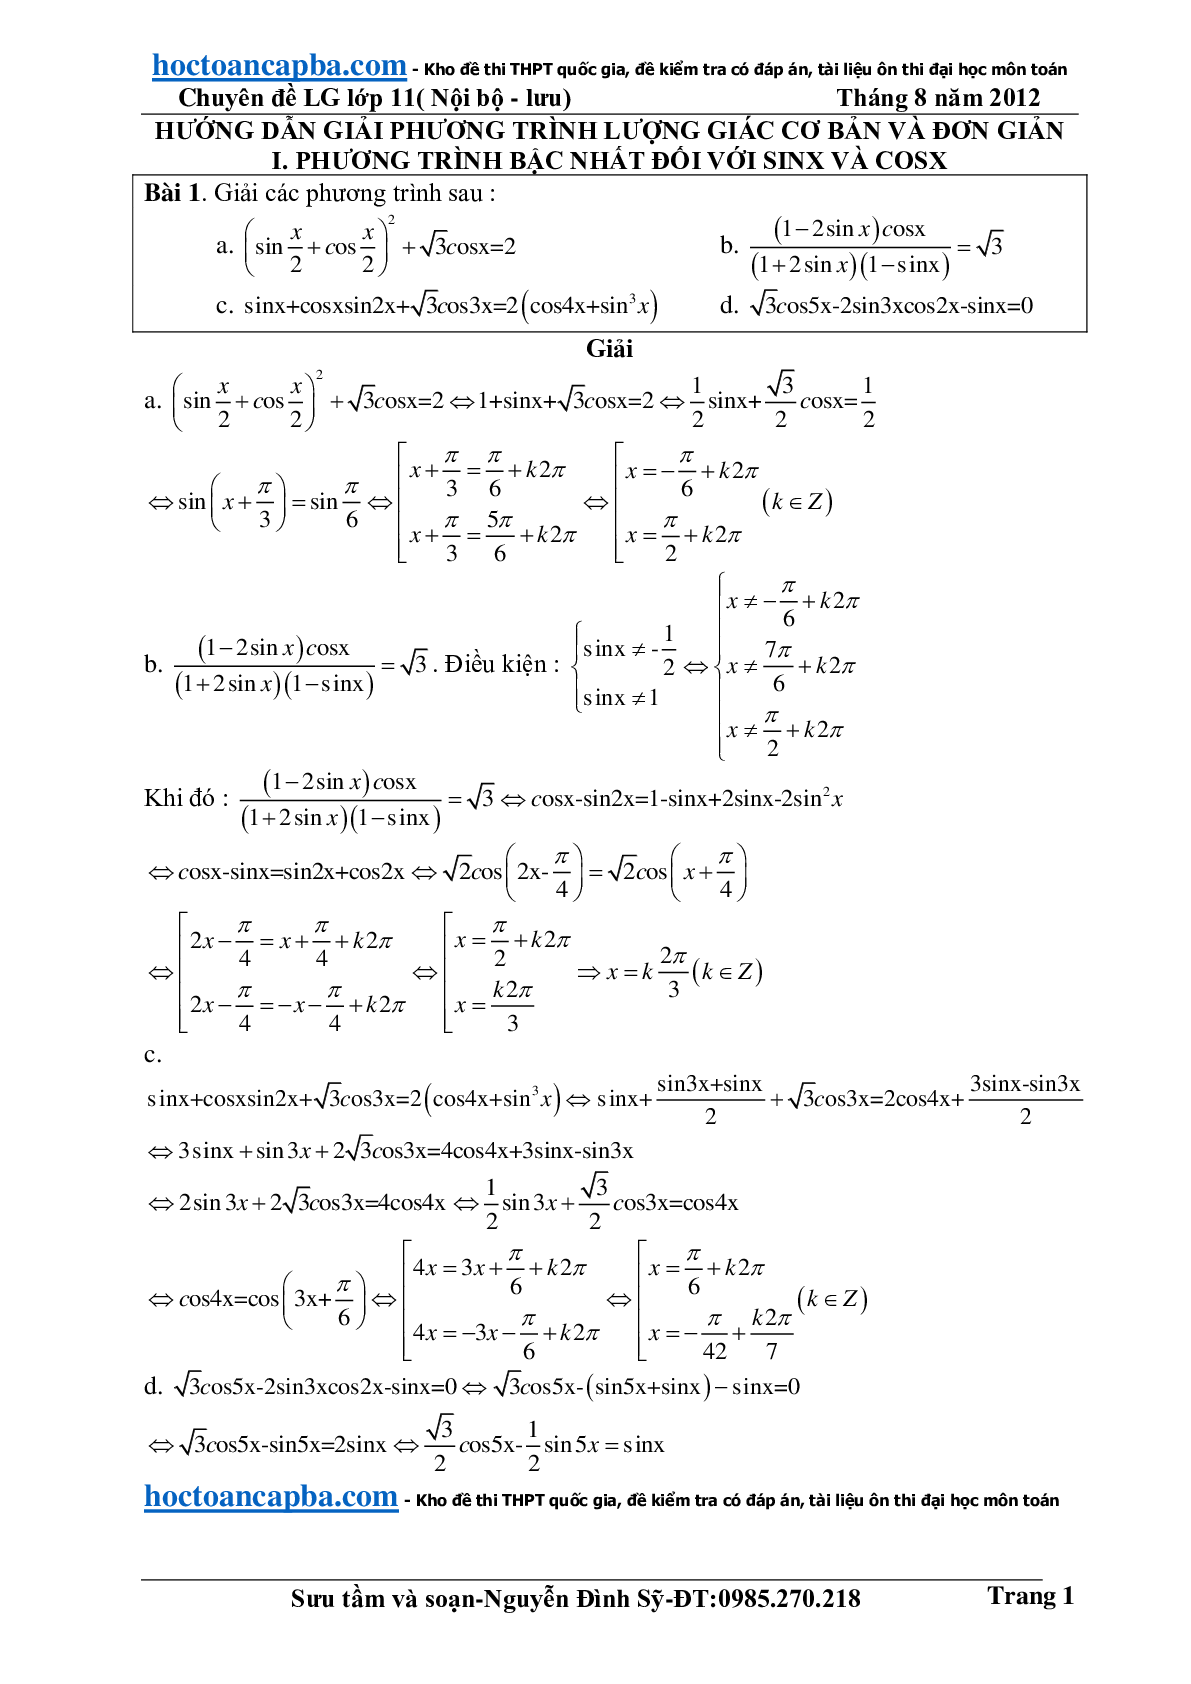 Hướng dẫn giải phương trình lượng giác cơ bản và đơn giản (trang 1)